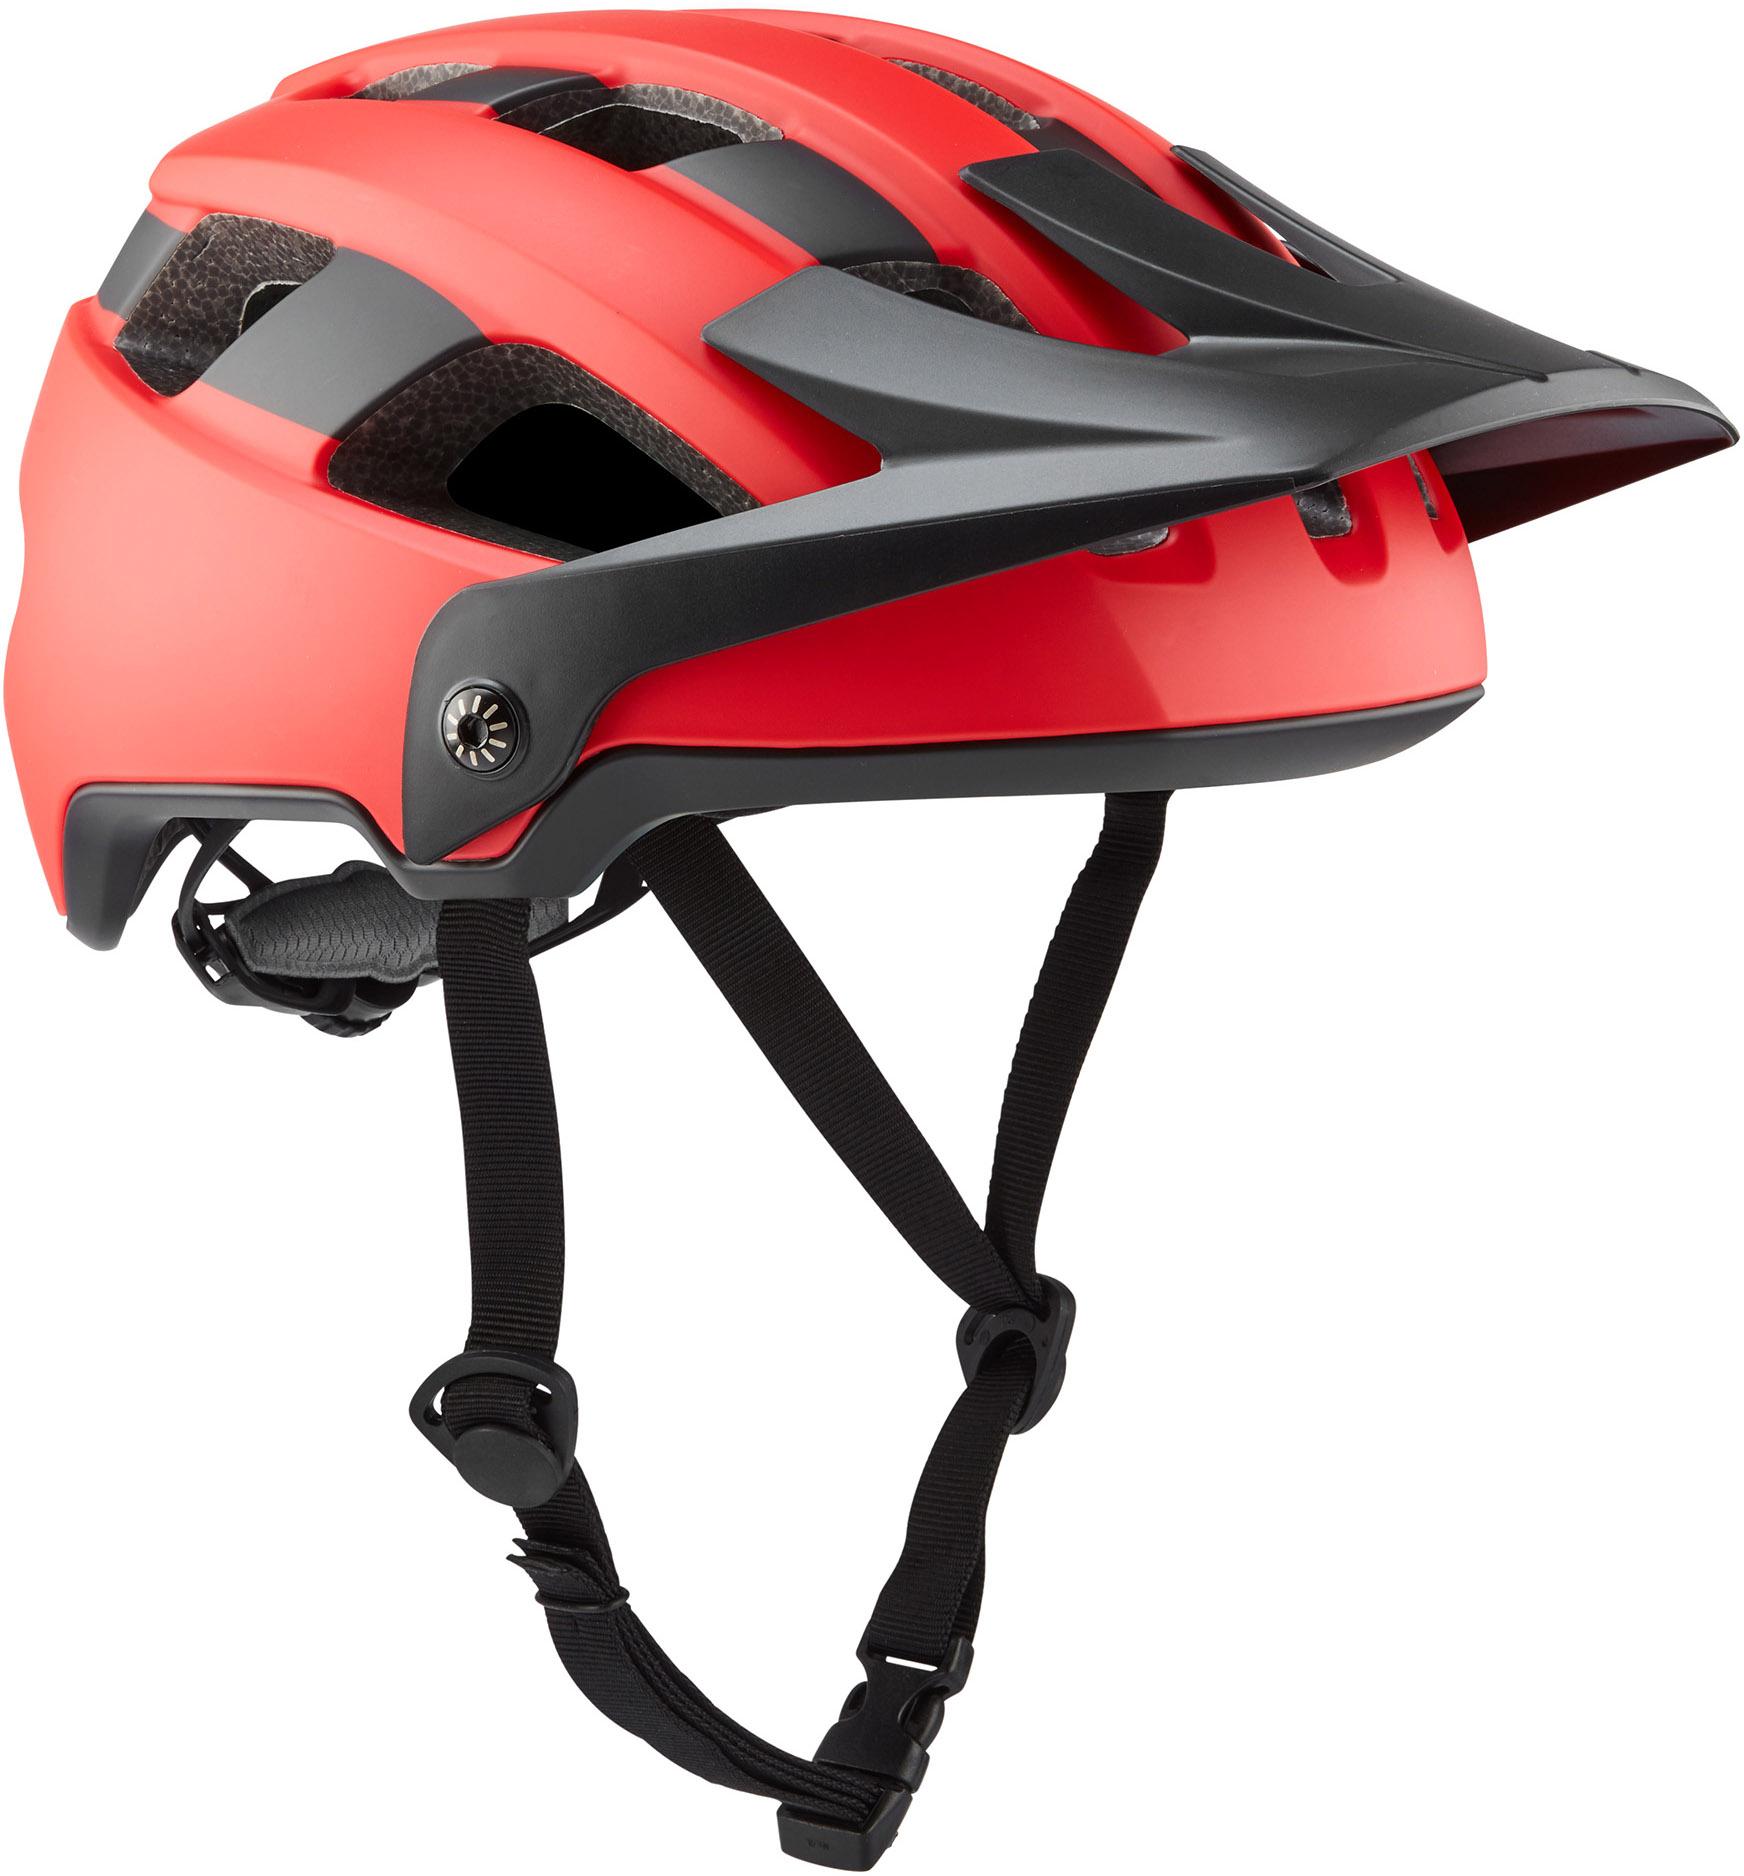 Brand-x Eh1 Enduro Mtb Cycling Helmet - Red/black